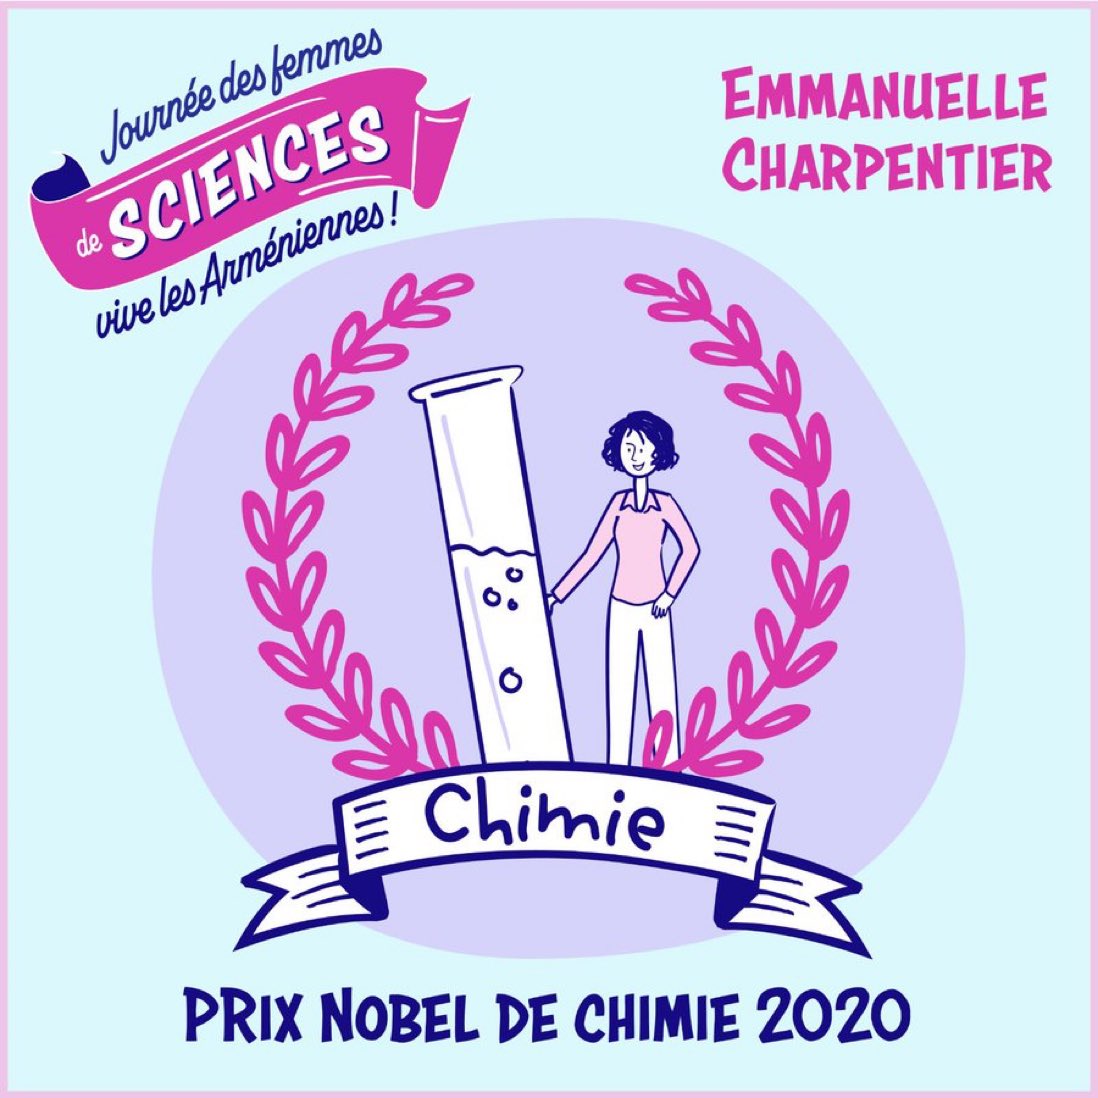 Emmanuelle Charpentier (née en 1968), microbiologiste, généticienne et biochimiste, prix Nobel de chimie 2020 avec Jennifer Doudna, connue mondialement pour ses travaux sur les bases moléculaires de l’infection

@WomenScienceDay @ONUFemmes #StandWithArmenia